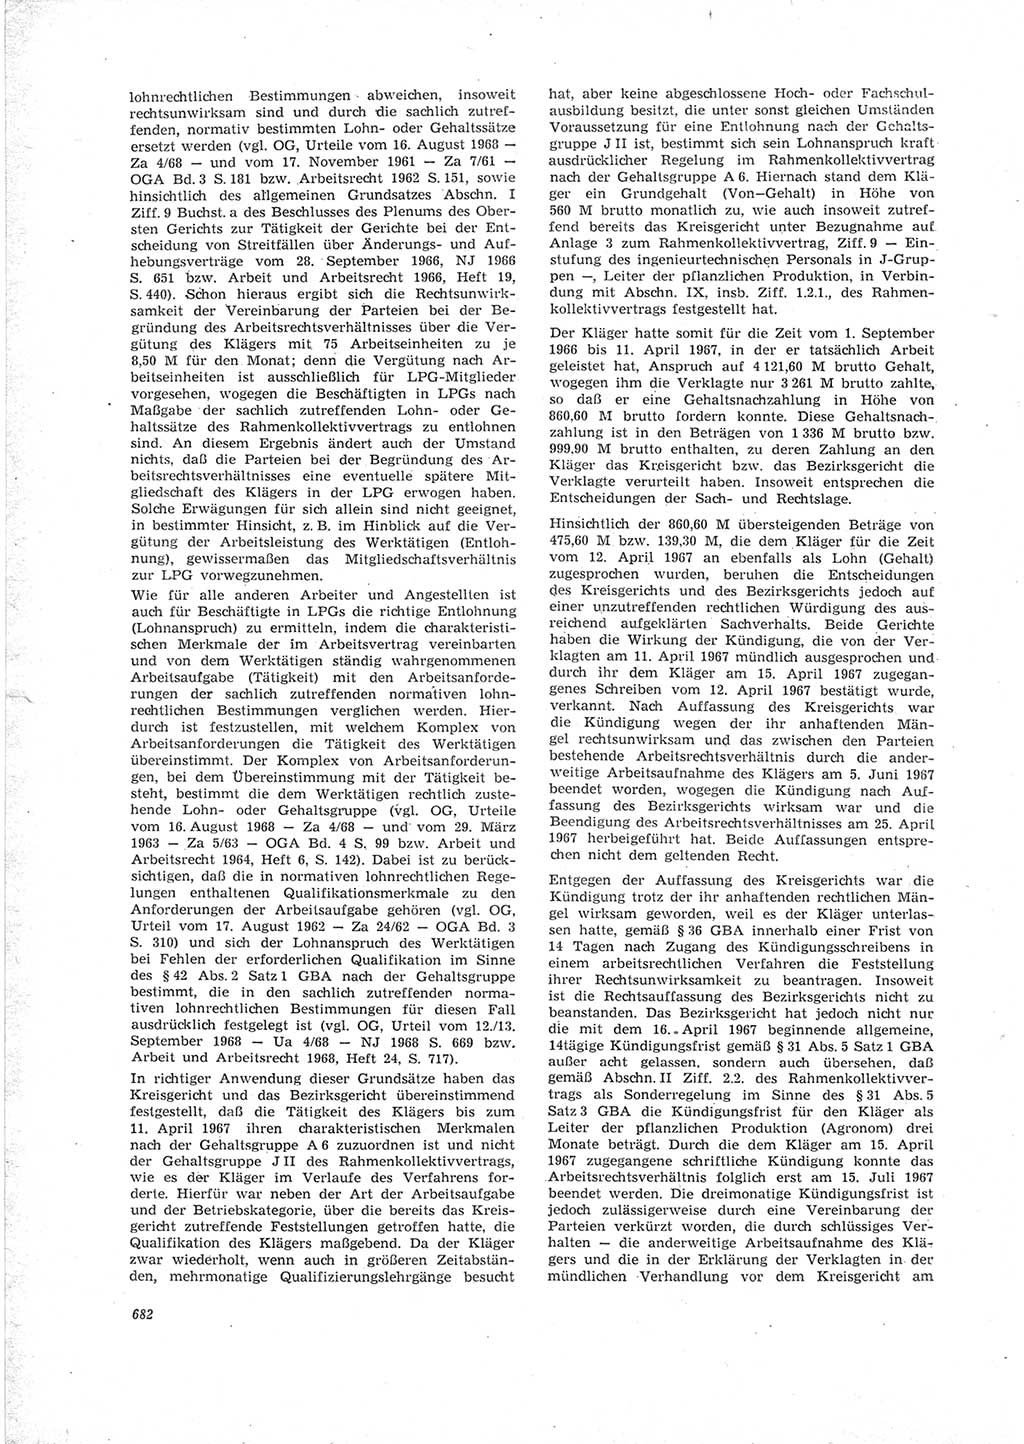 Neue Justiz (NJ), Zeitschrift für Recht und Rechtswissenschaft [Deutsche Demokratische Republik (DDR)], 23. Jahrgang 1969, Seite 682 (NJ DDR 1969, S. 682)